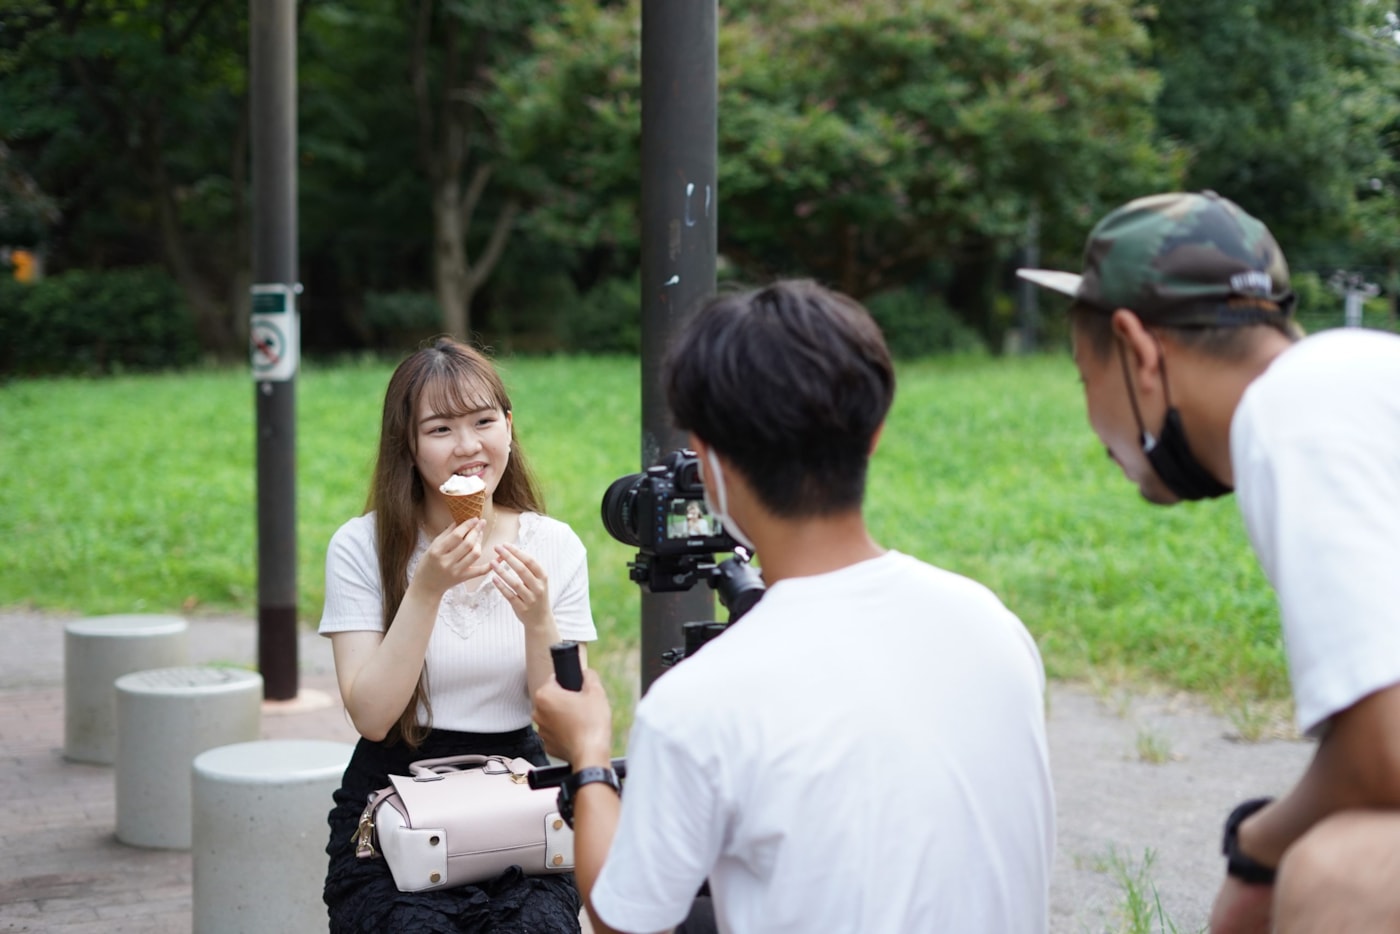 【インタビュー】街で恋する50秒──映像クリエイター集団・GOJU企画『50’s Date』、今は見えない表情を探しに